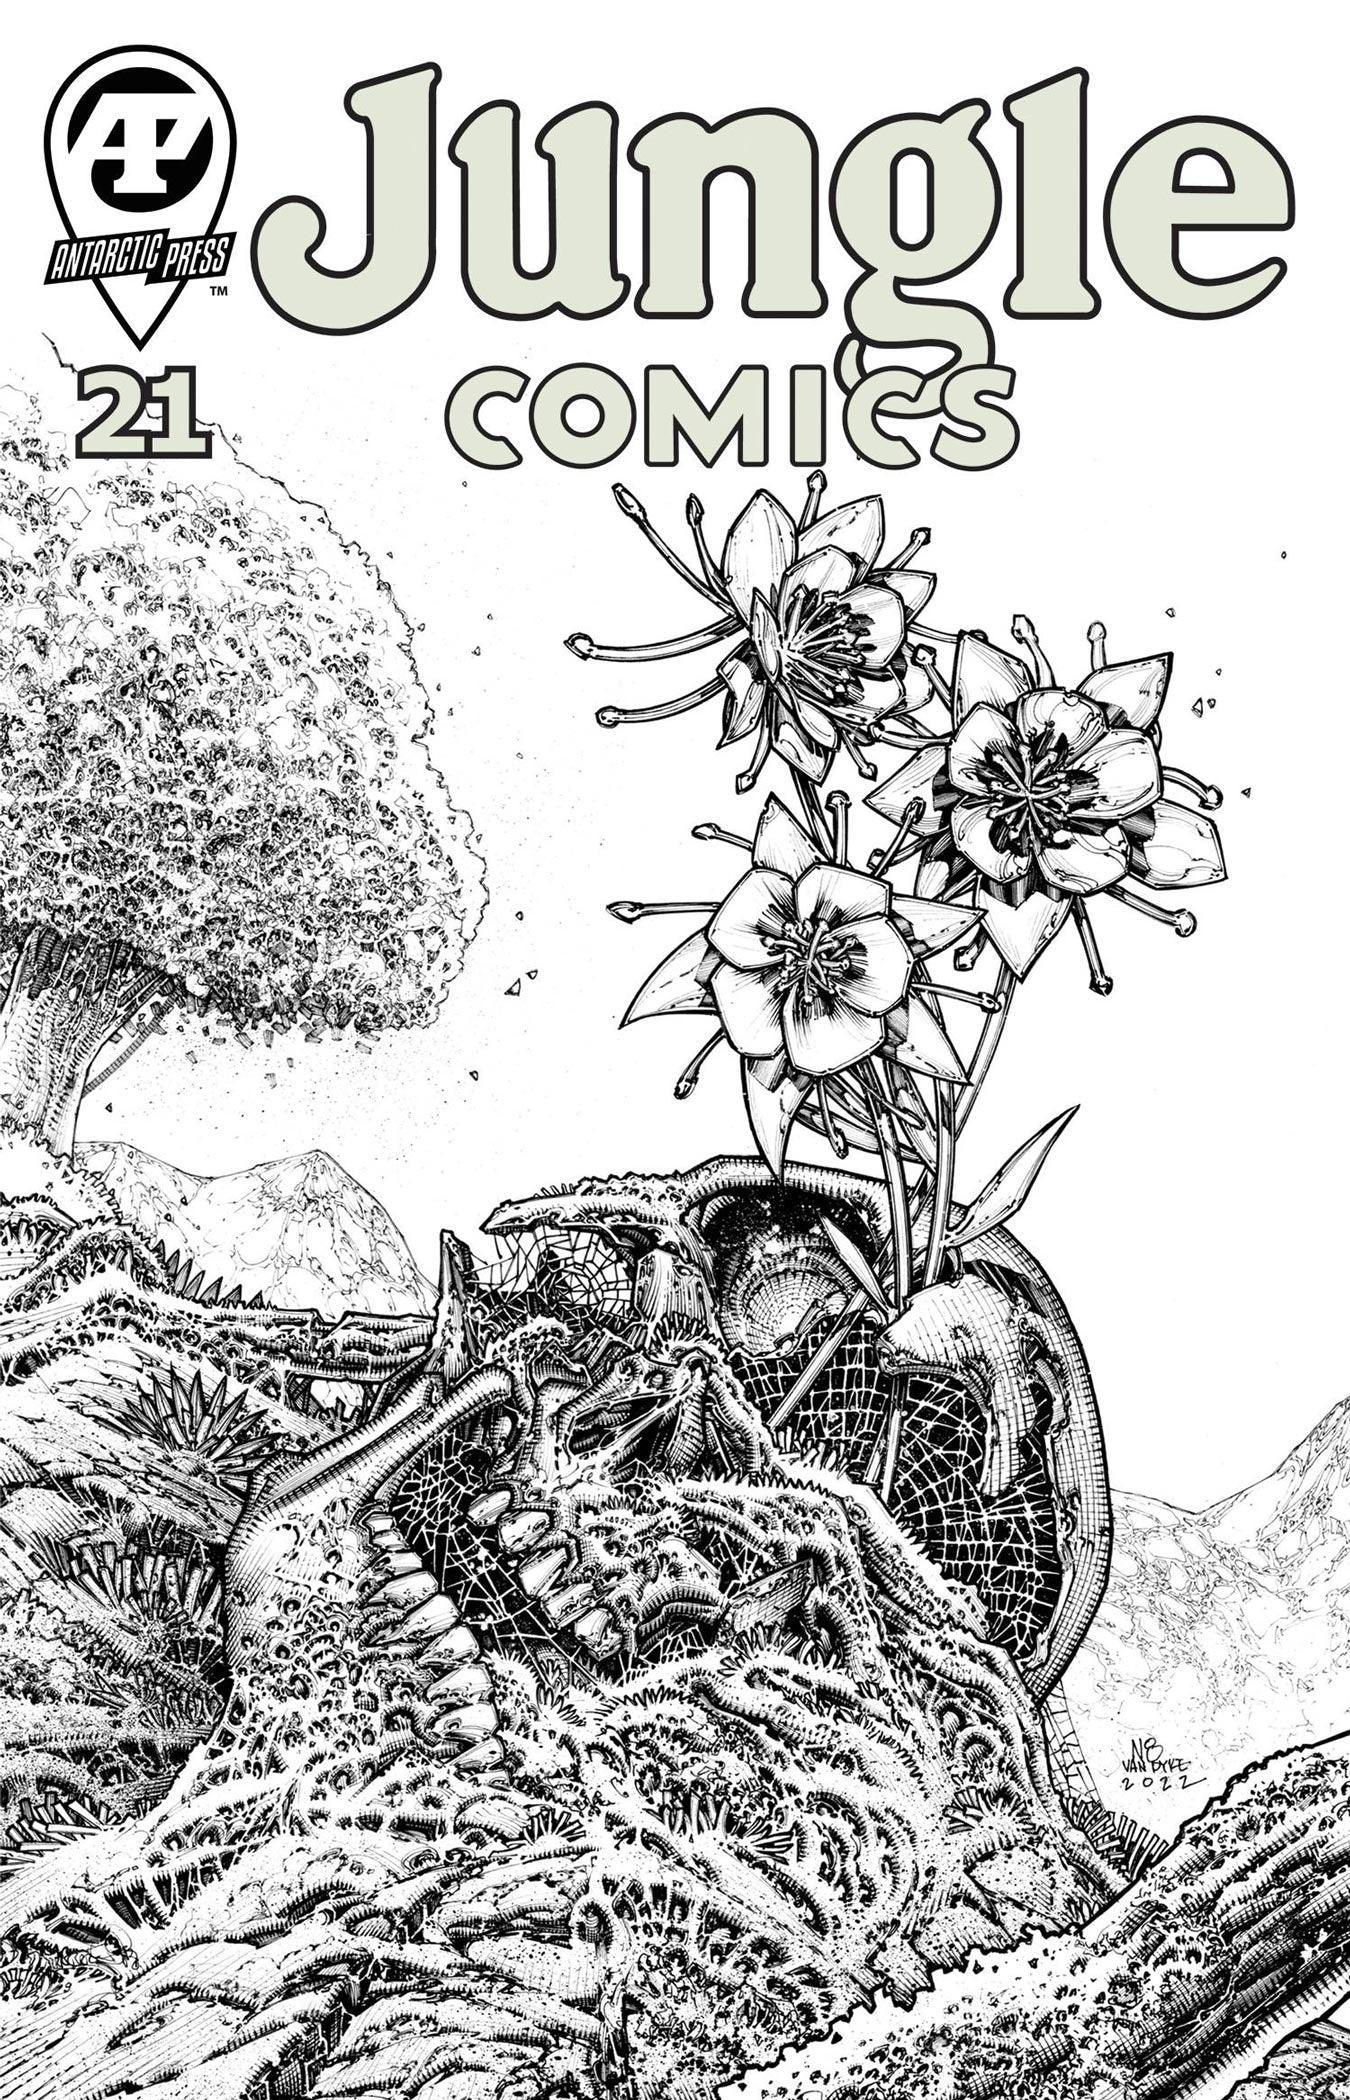 JUNGLE COMICS (2019) #21 - Kings Comics